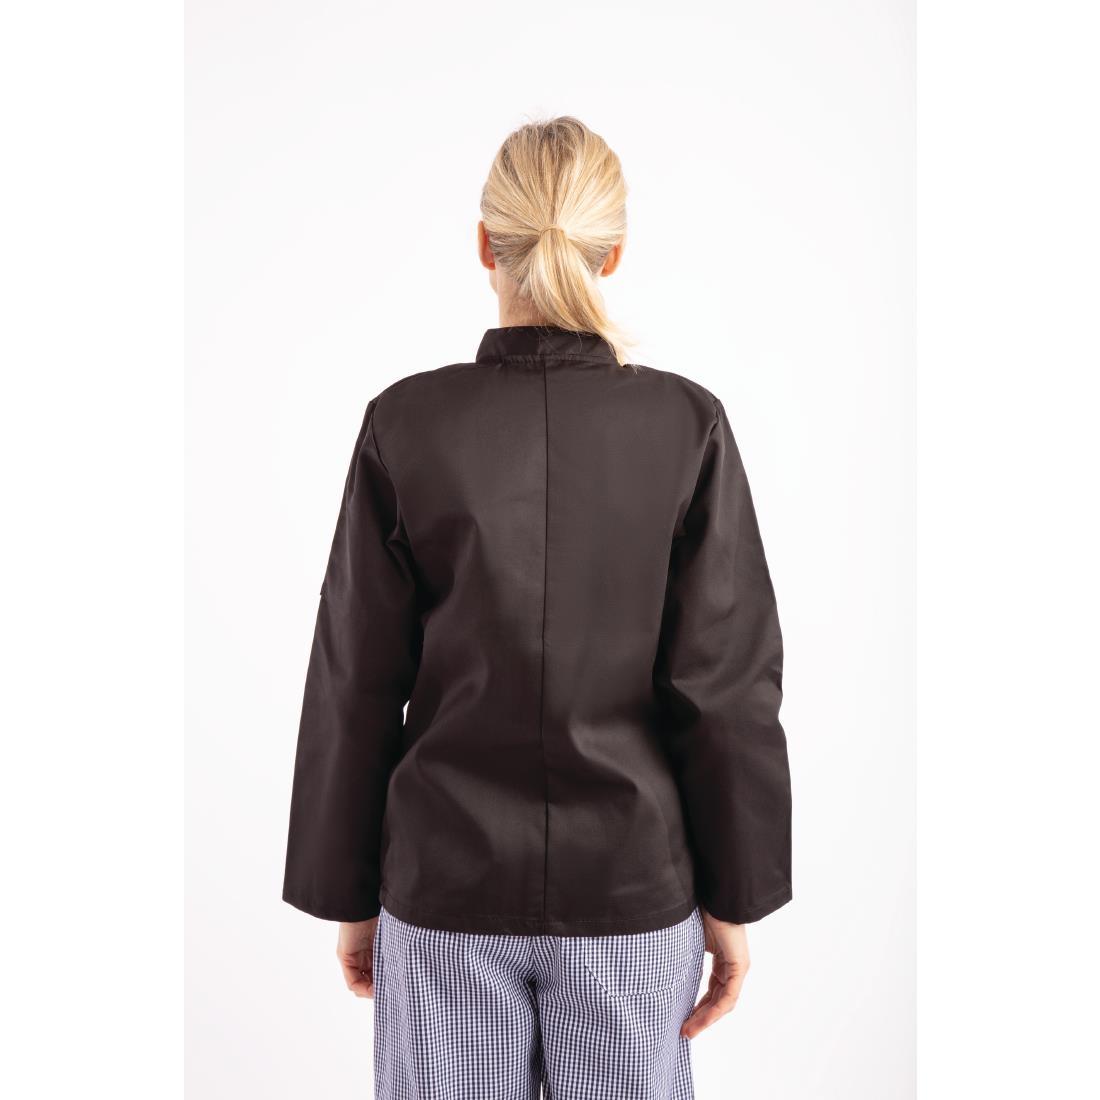 Whites Vegas Unisex Chefs Jacket Long Sleeve Black M - A438-M  - 10